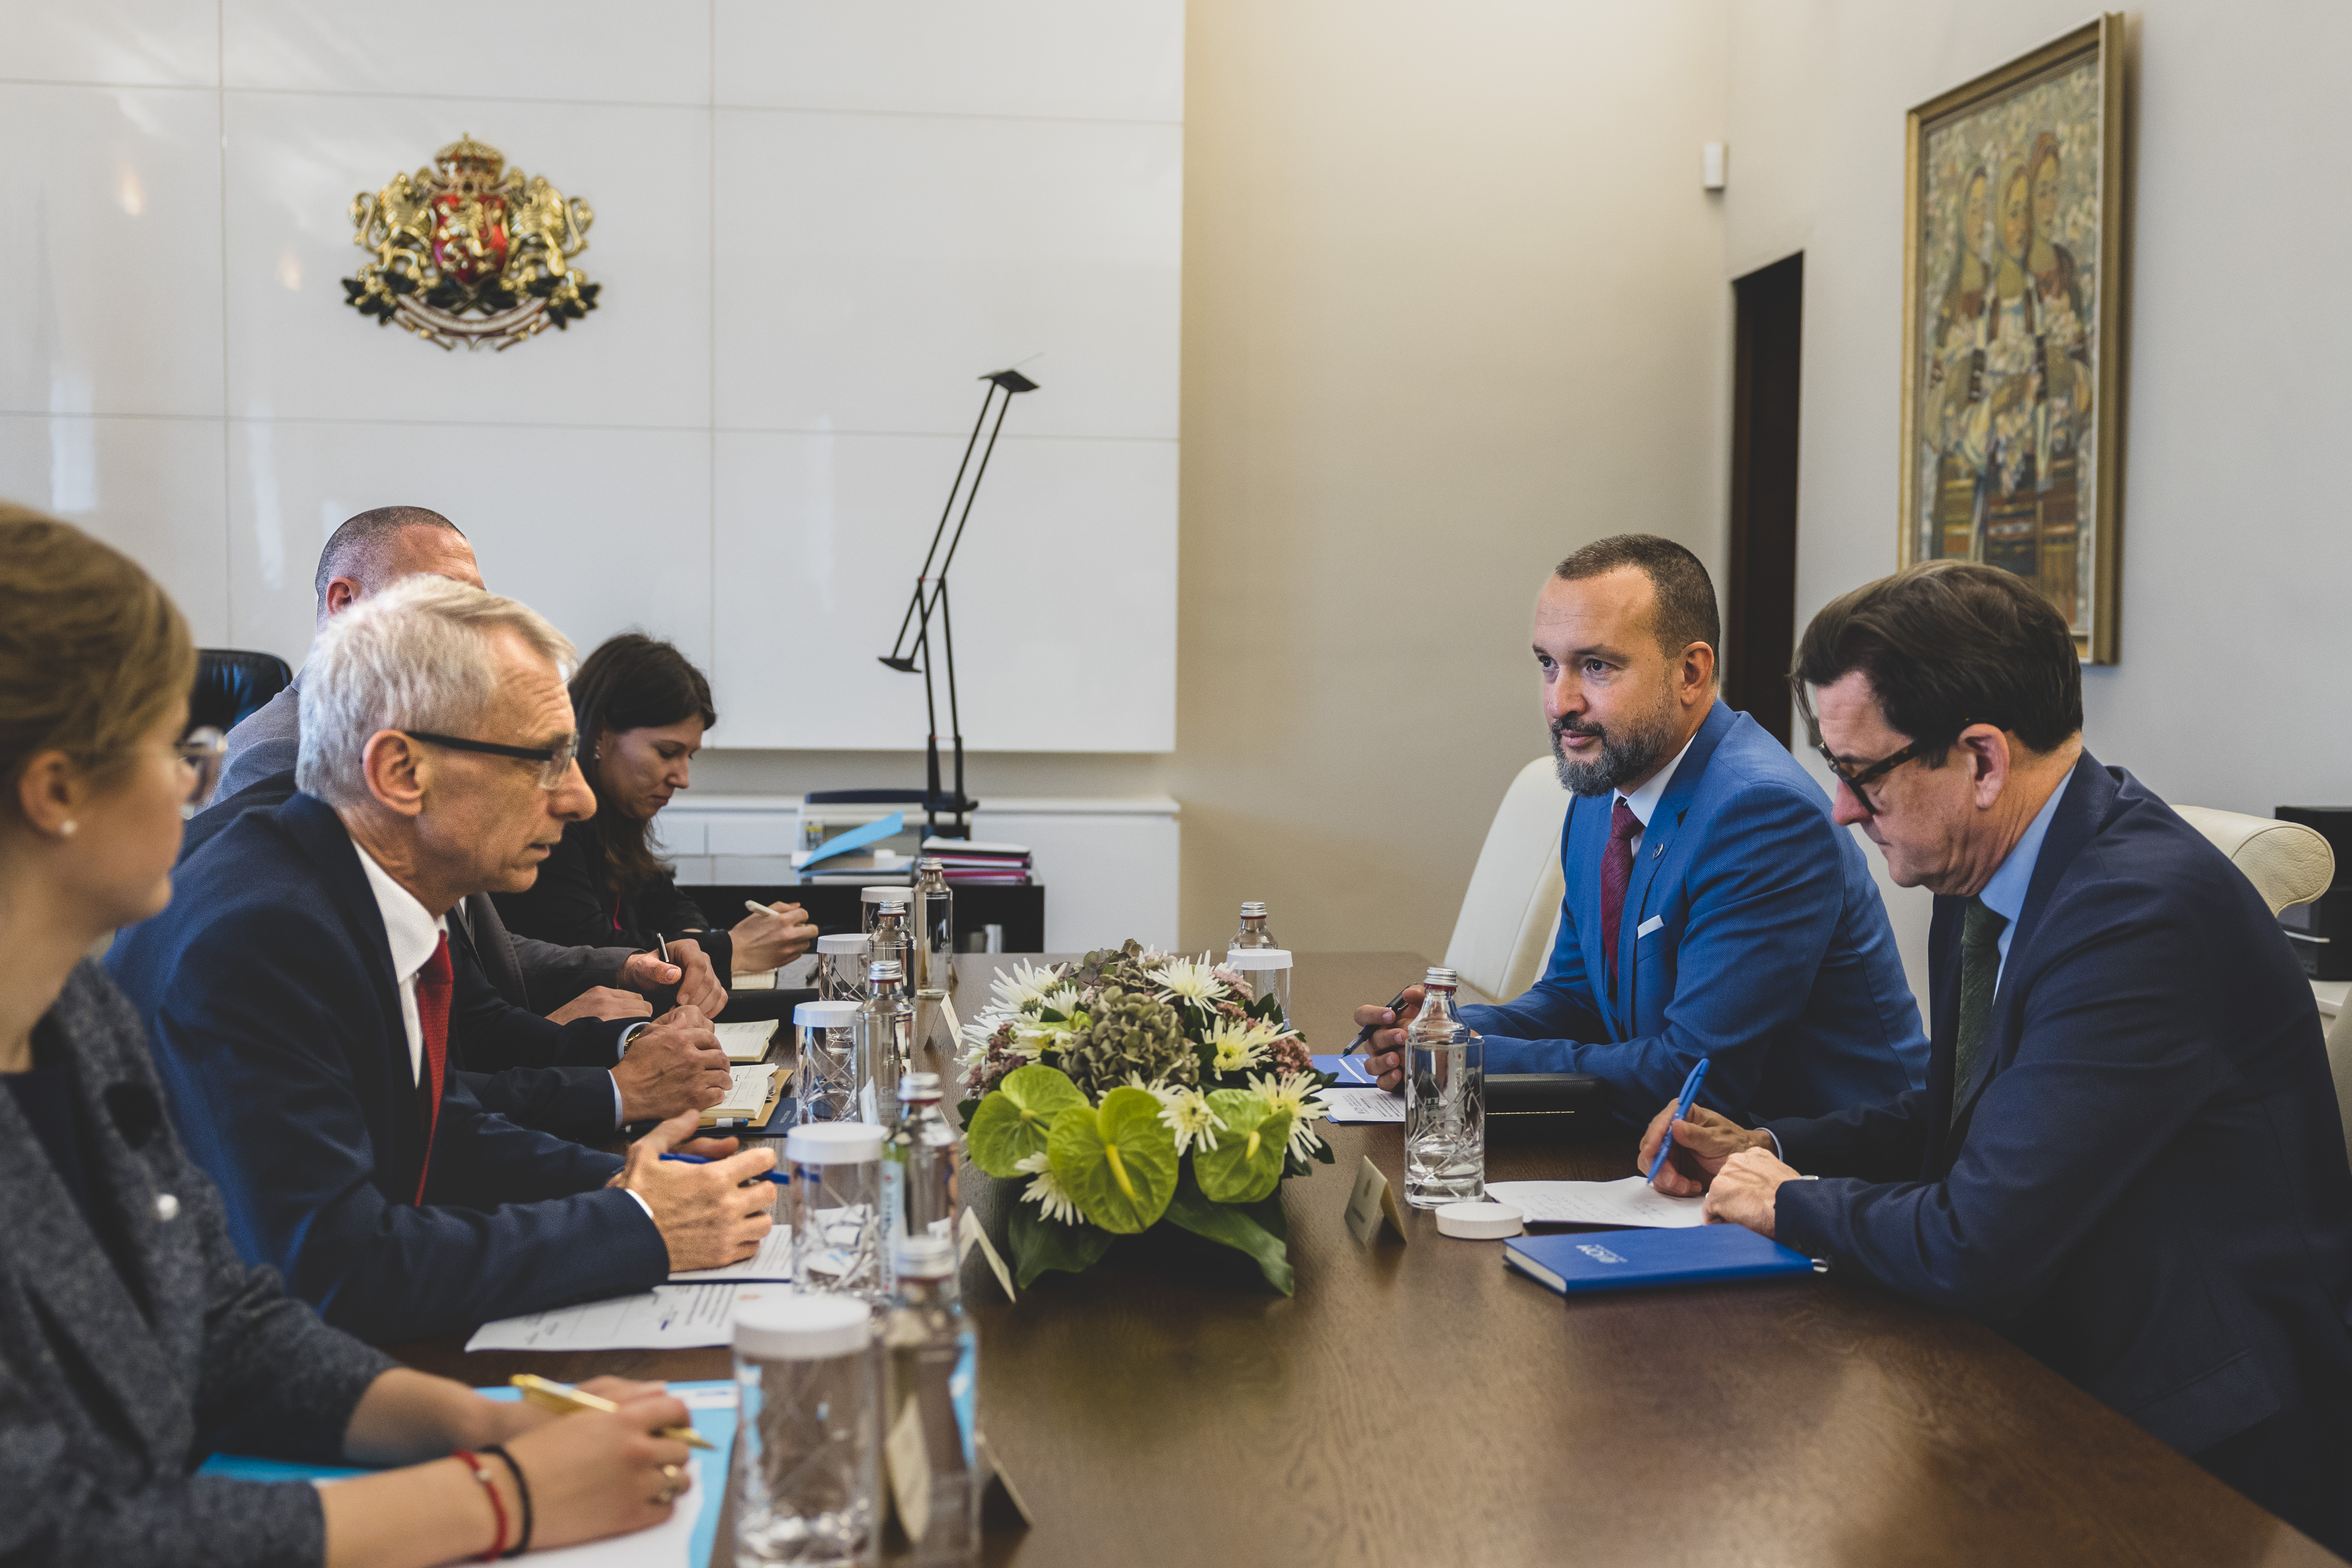 Mr Ola Henrikson and Mr Radoslav Stamenkov at a meeting with Mr. Nikolay Denkov